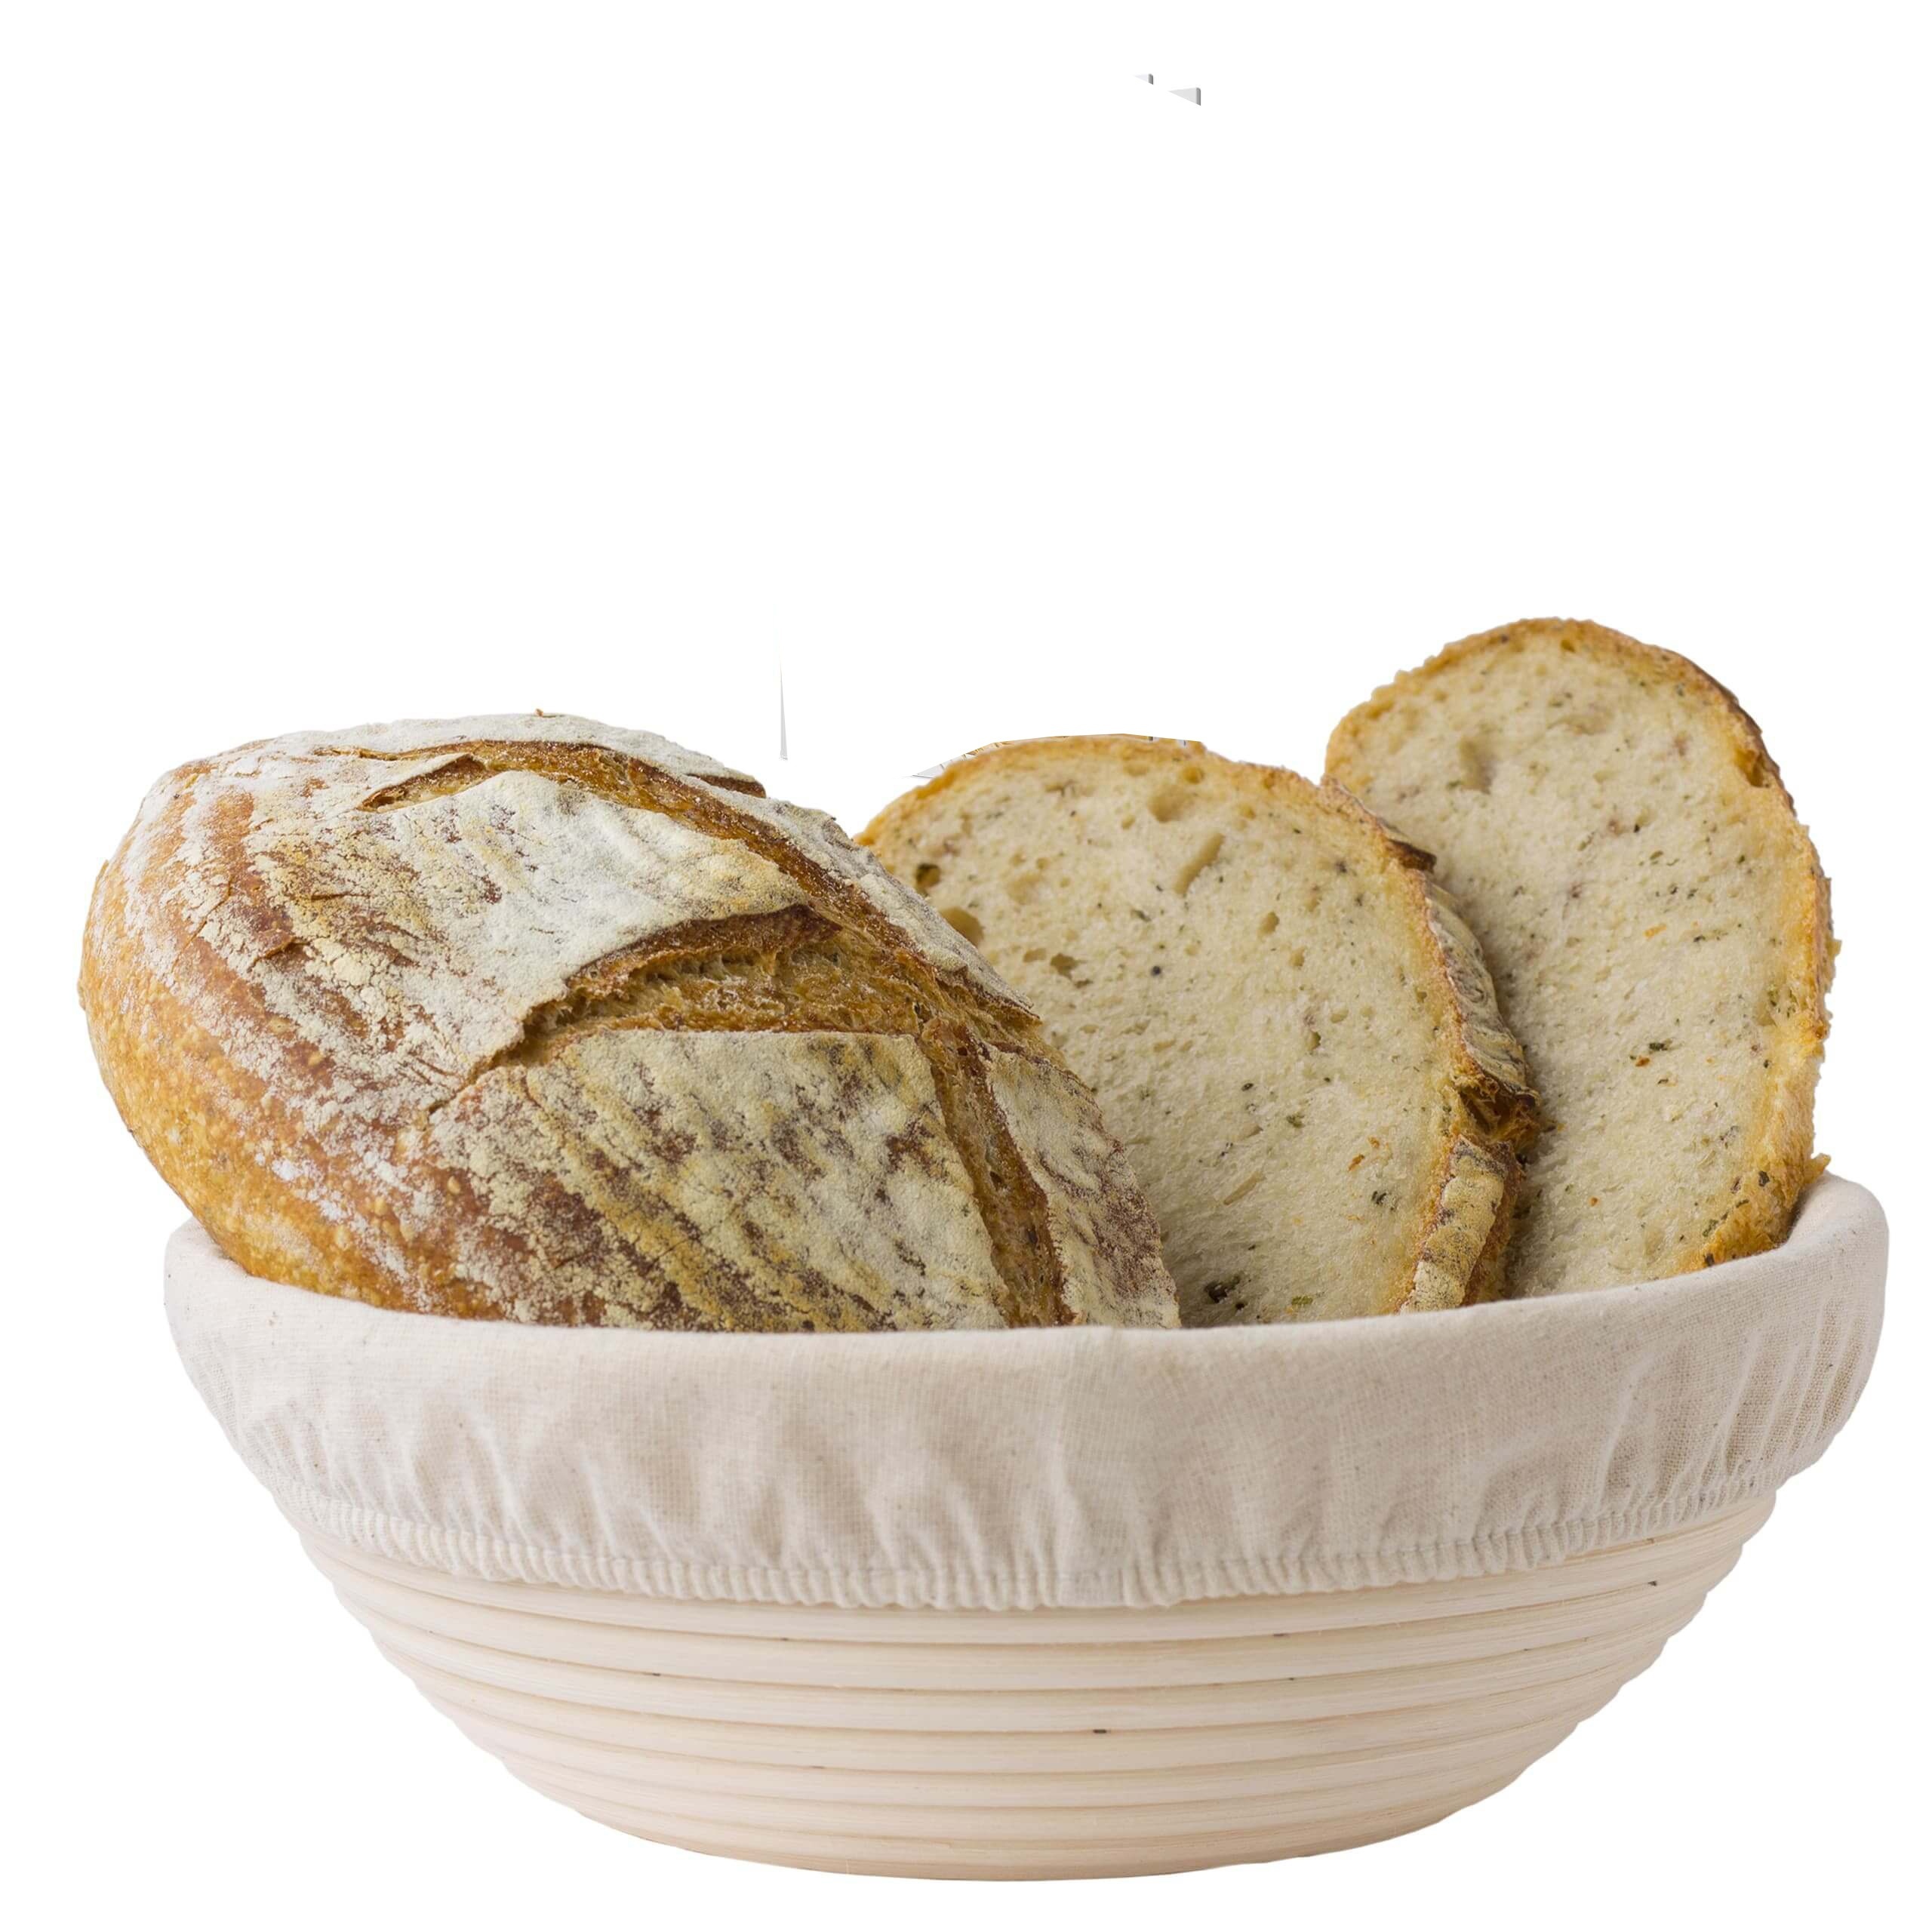  Cesta de fermentación de pan, cesta a prueba de pan